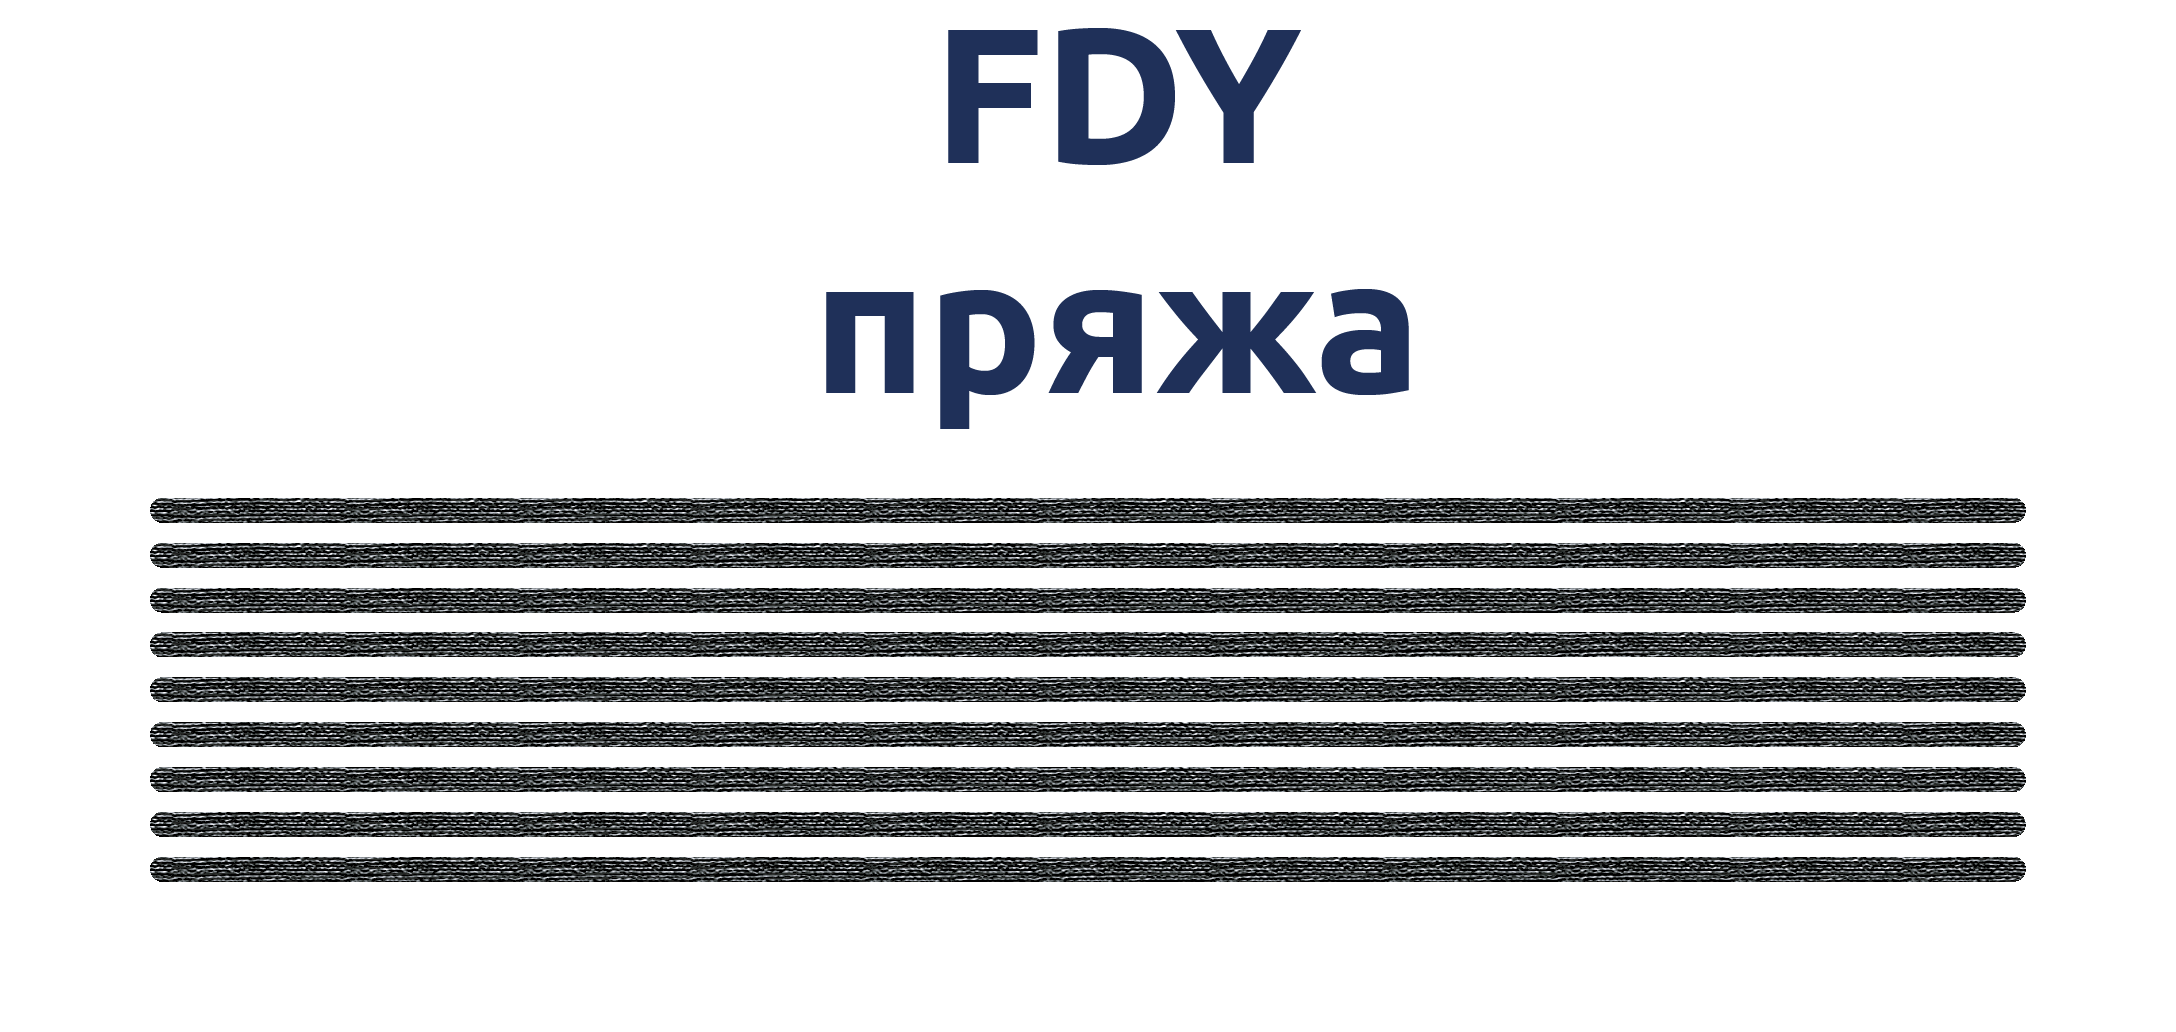 Схематичне зображення мультифіламентної FDY пряжі.png